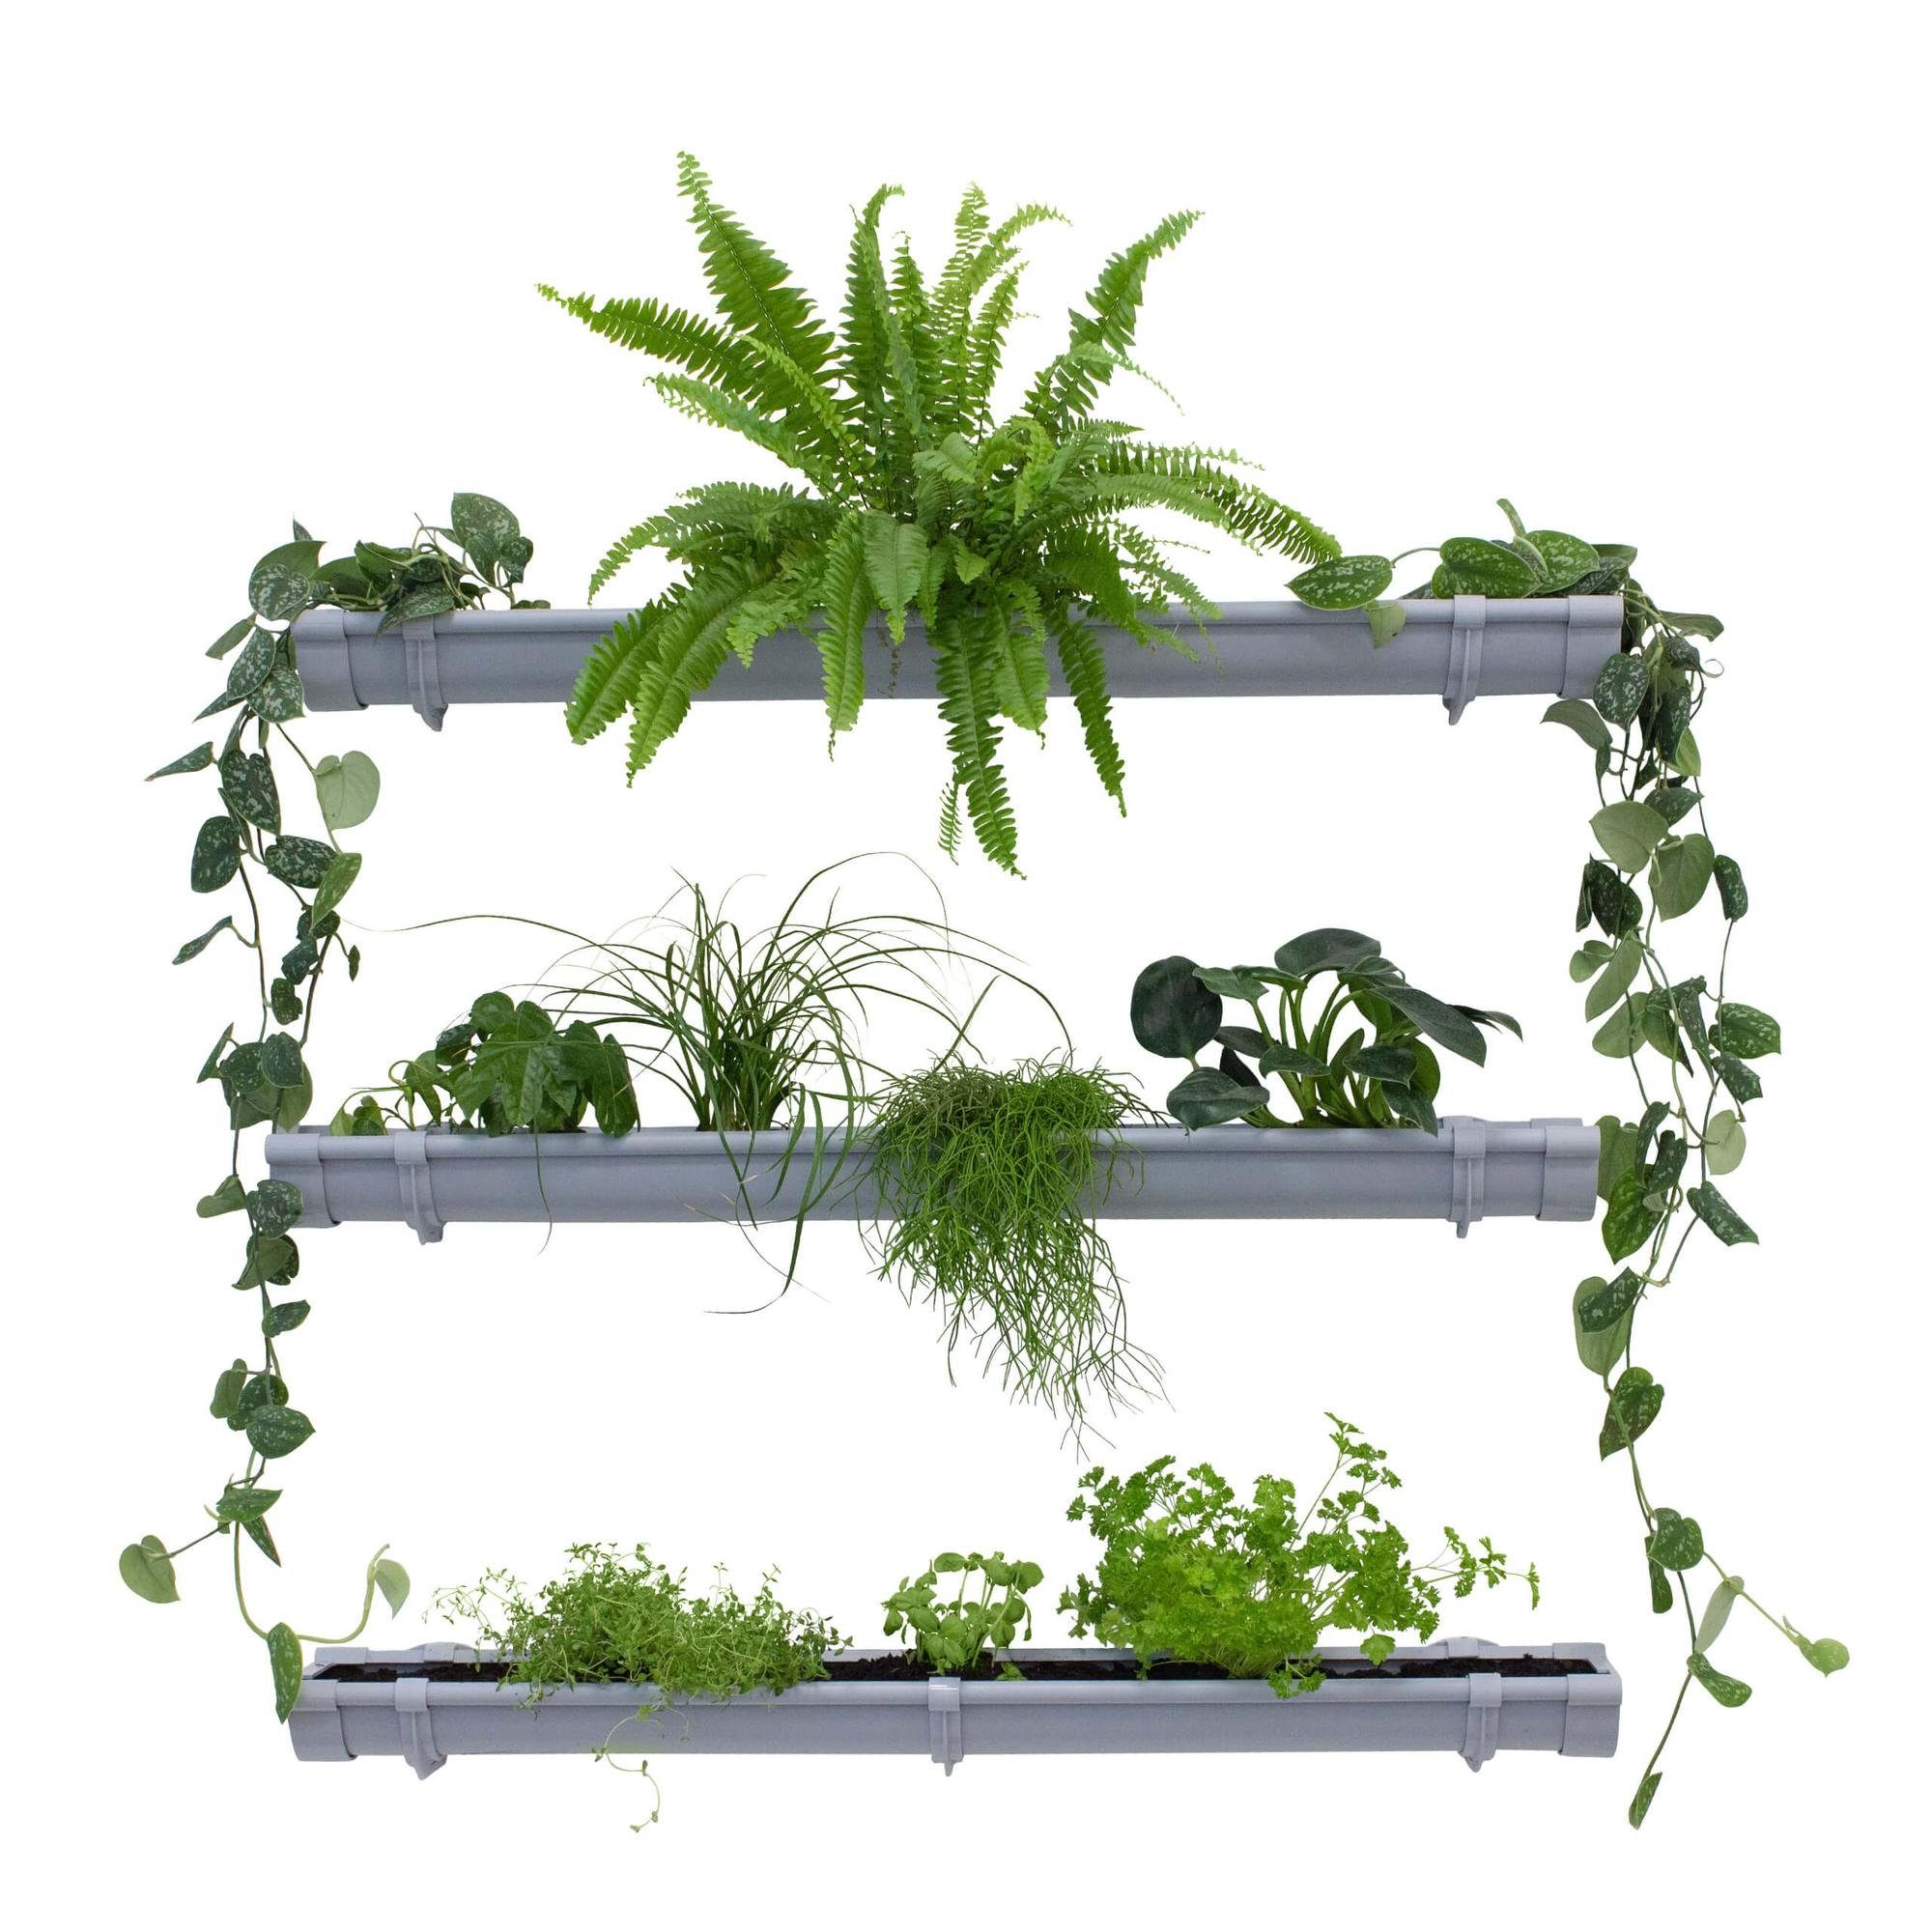 Jardinion Blumentopf (Grüne Pflanzenwand, Vertikaler Garten, 1 St), Platzsparende Gartengestaltung, Pflanzenregal für Innen und Außen Grau